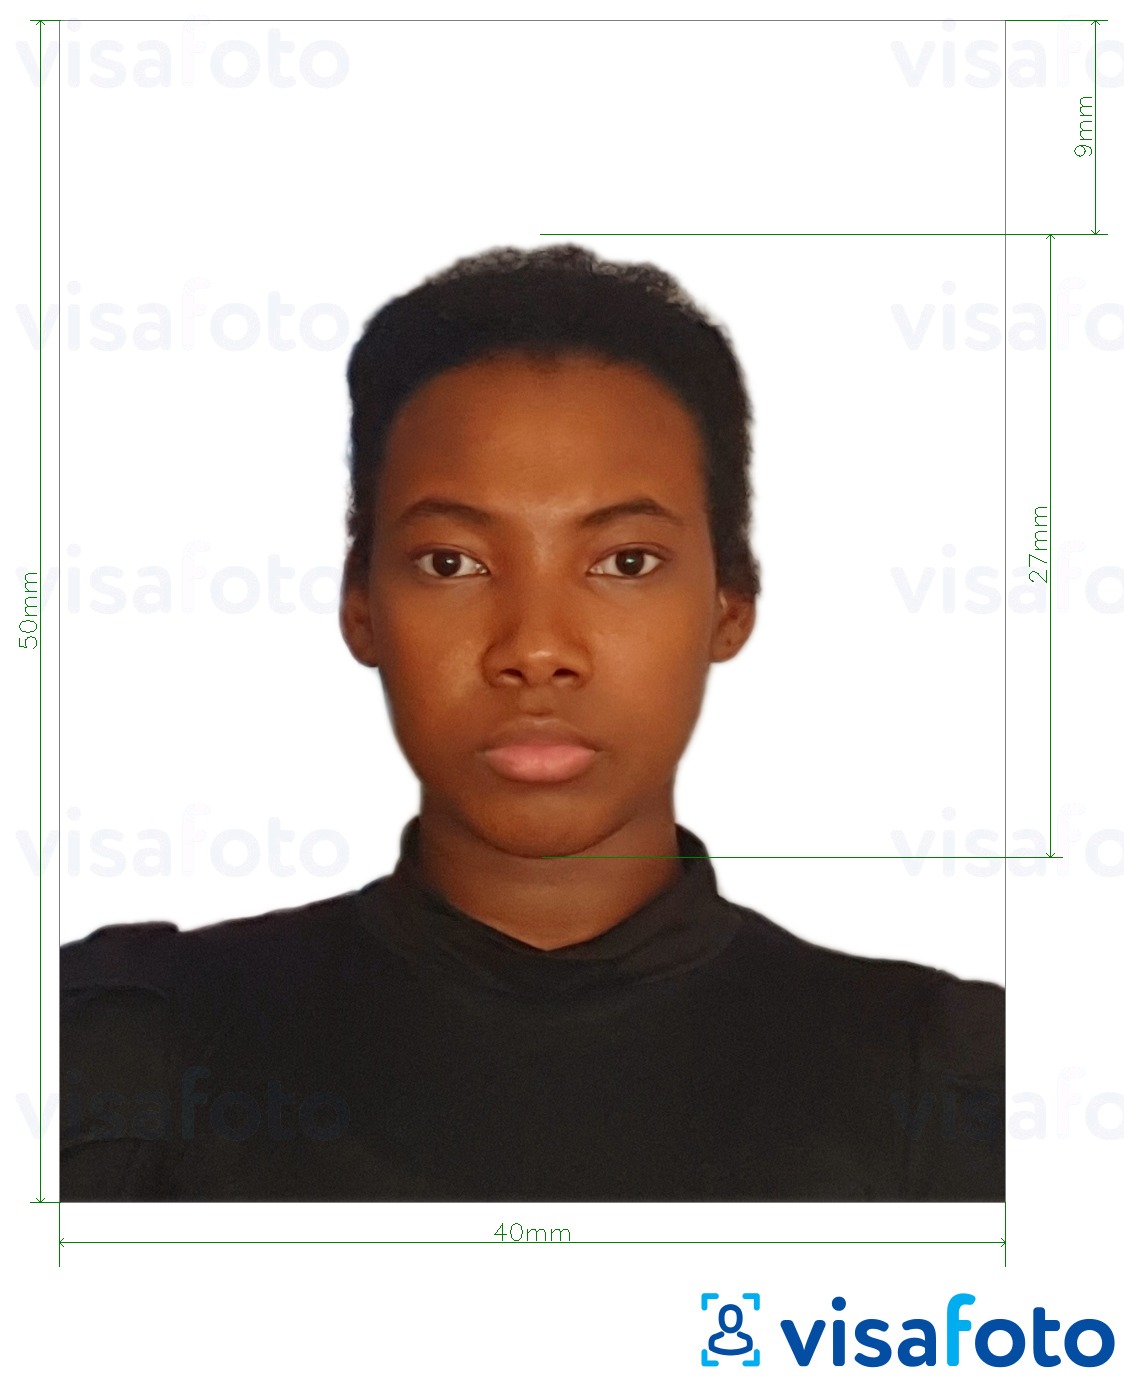 Nuotraukos pavyzdys Kolumbijos asmens tapatybės kortelė 4x5 cm su tikslaus dydžio specifikacija